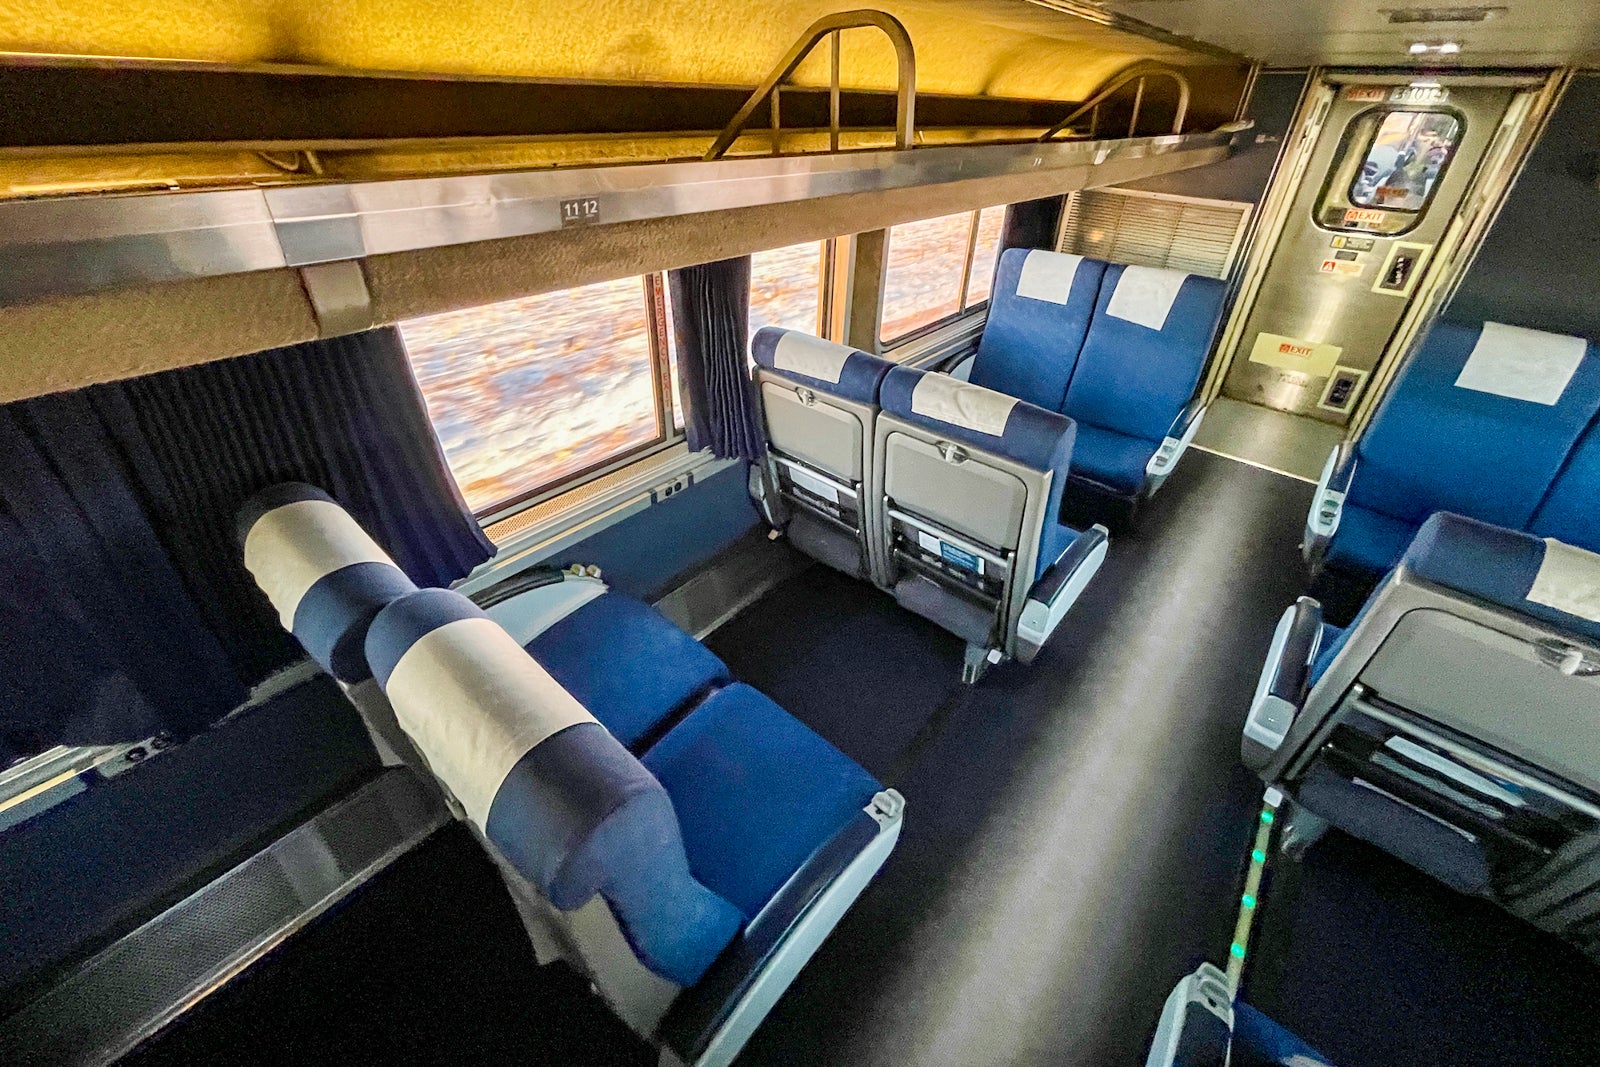 train interior